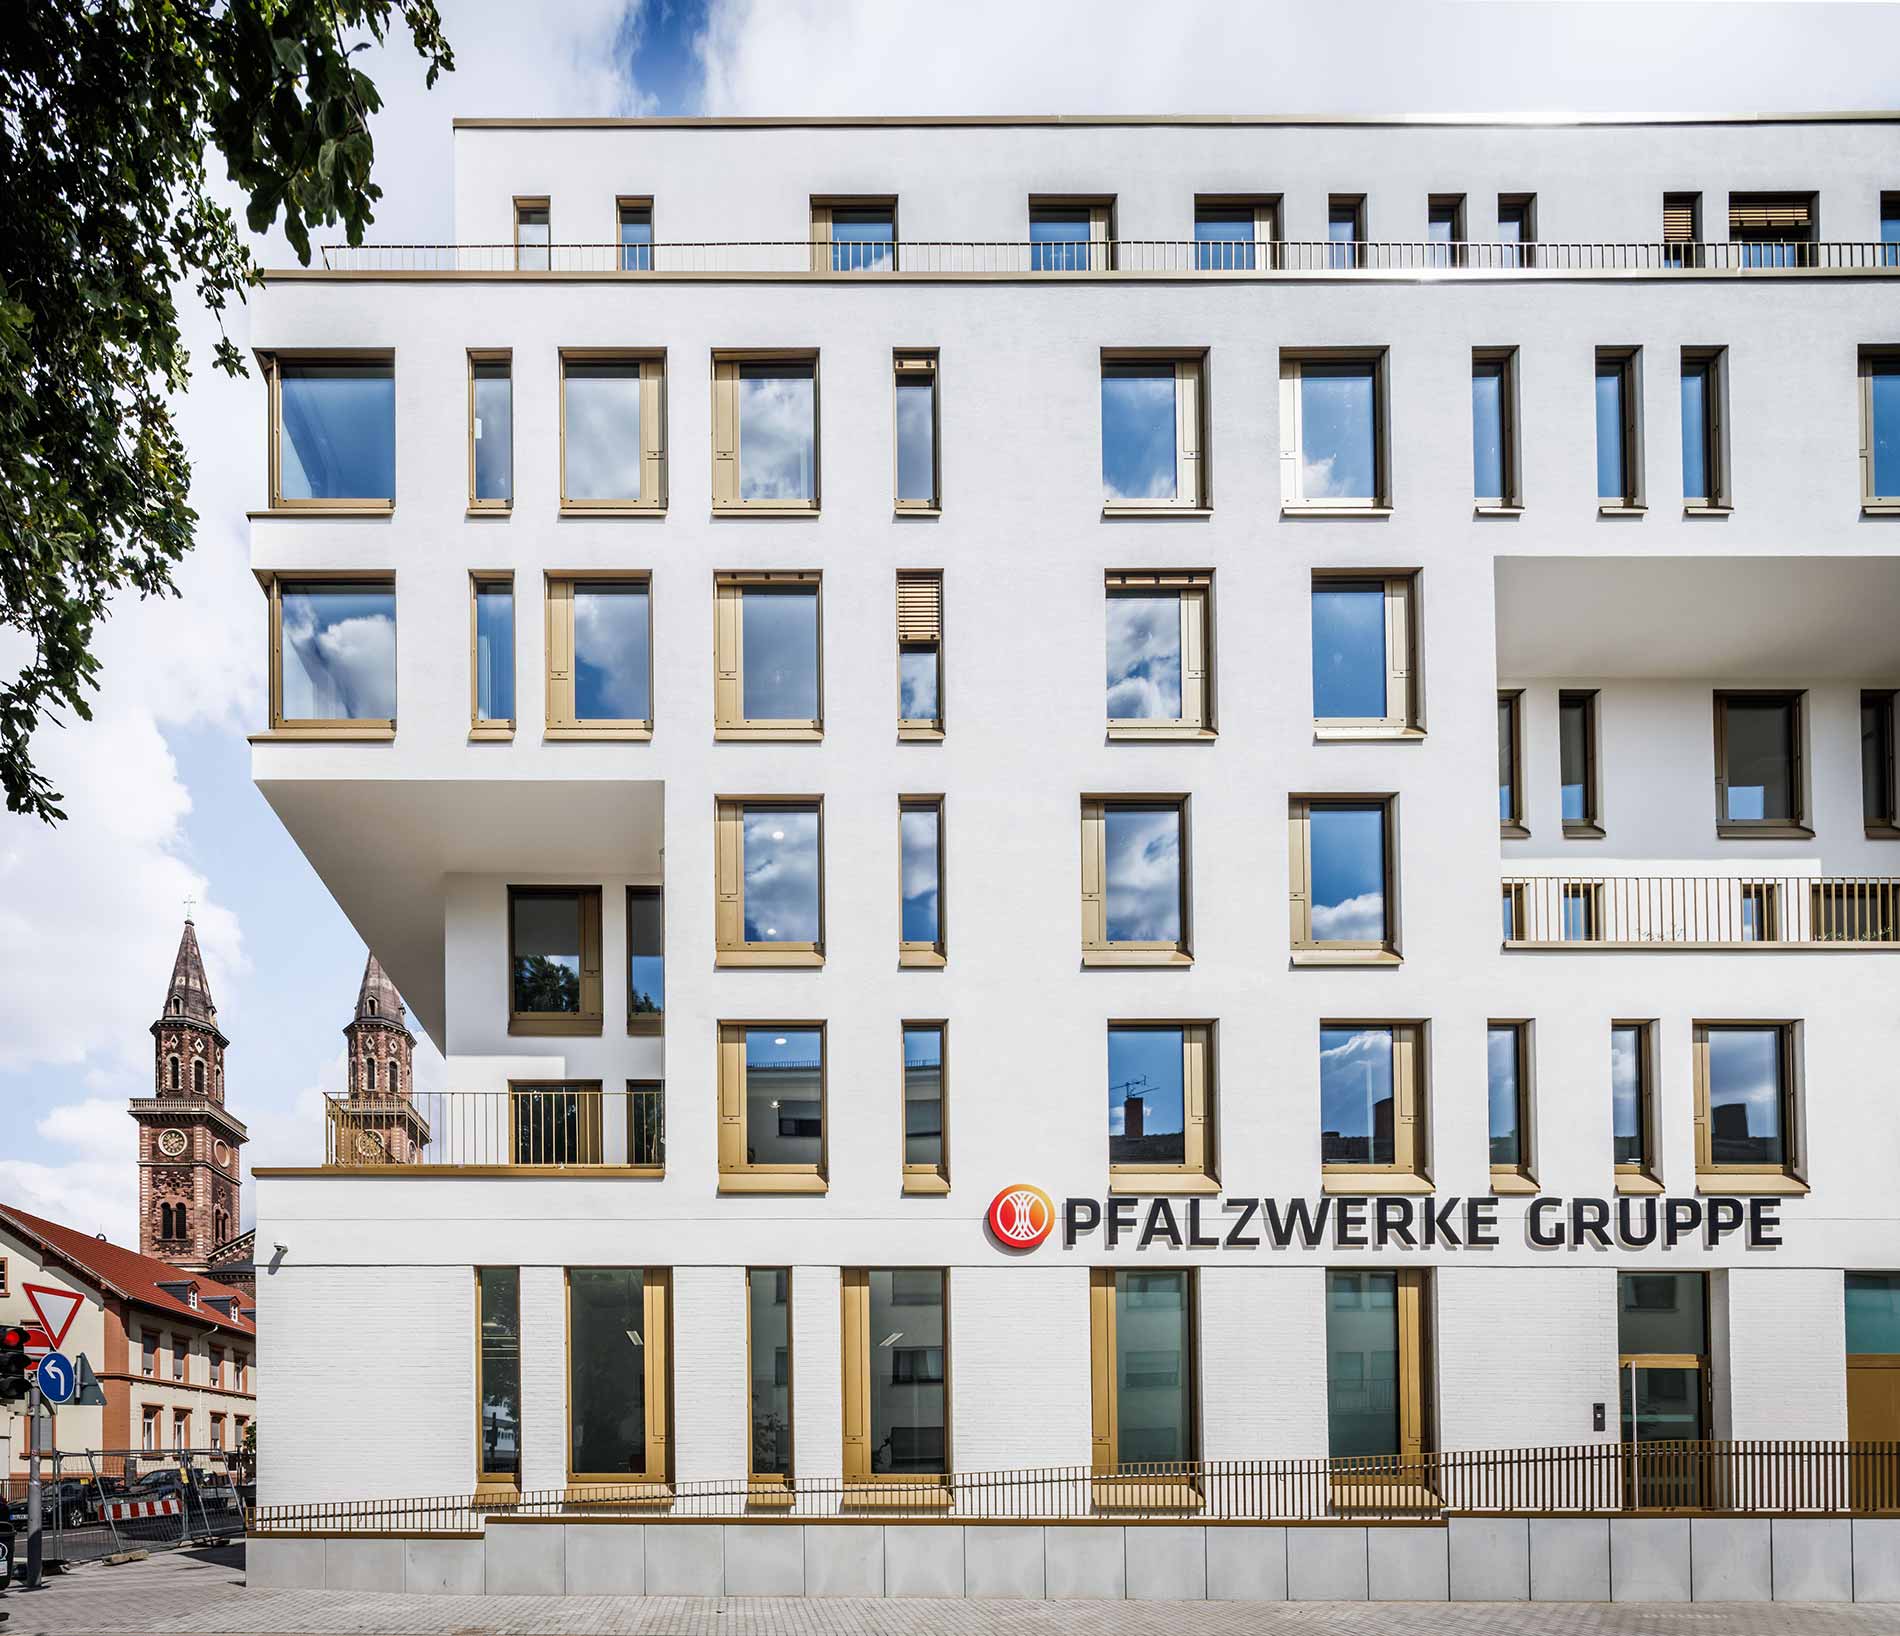 GJL+ Freie Architekten- Neubau Verwaltungsgebäude der Pfalzwerke Gruppe